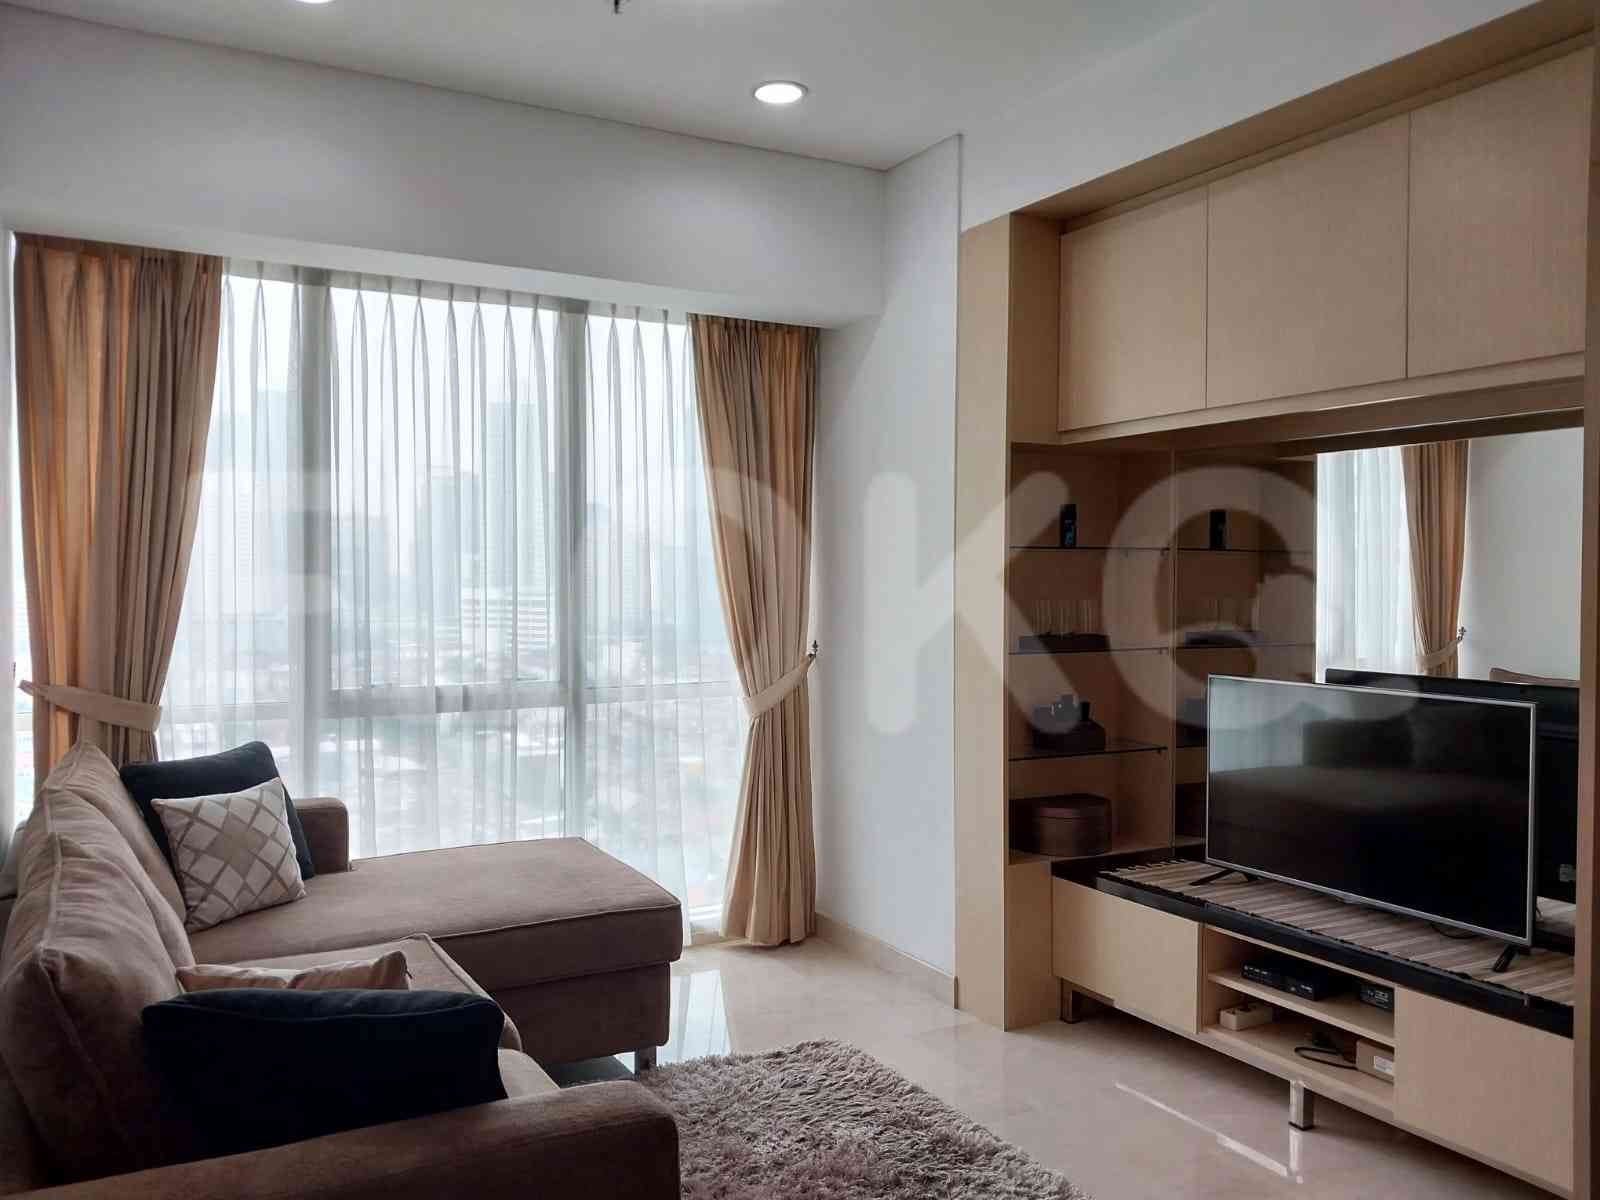 2 Bedroom on 15th Floor for Rent in Sky Garden - fse9d6 4